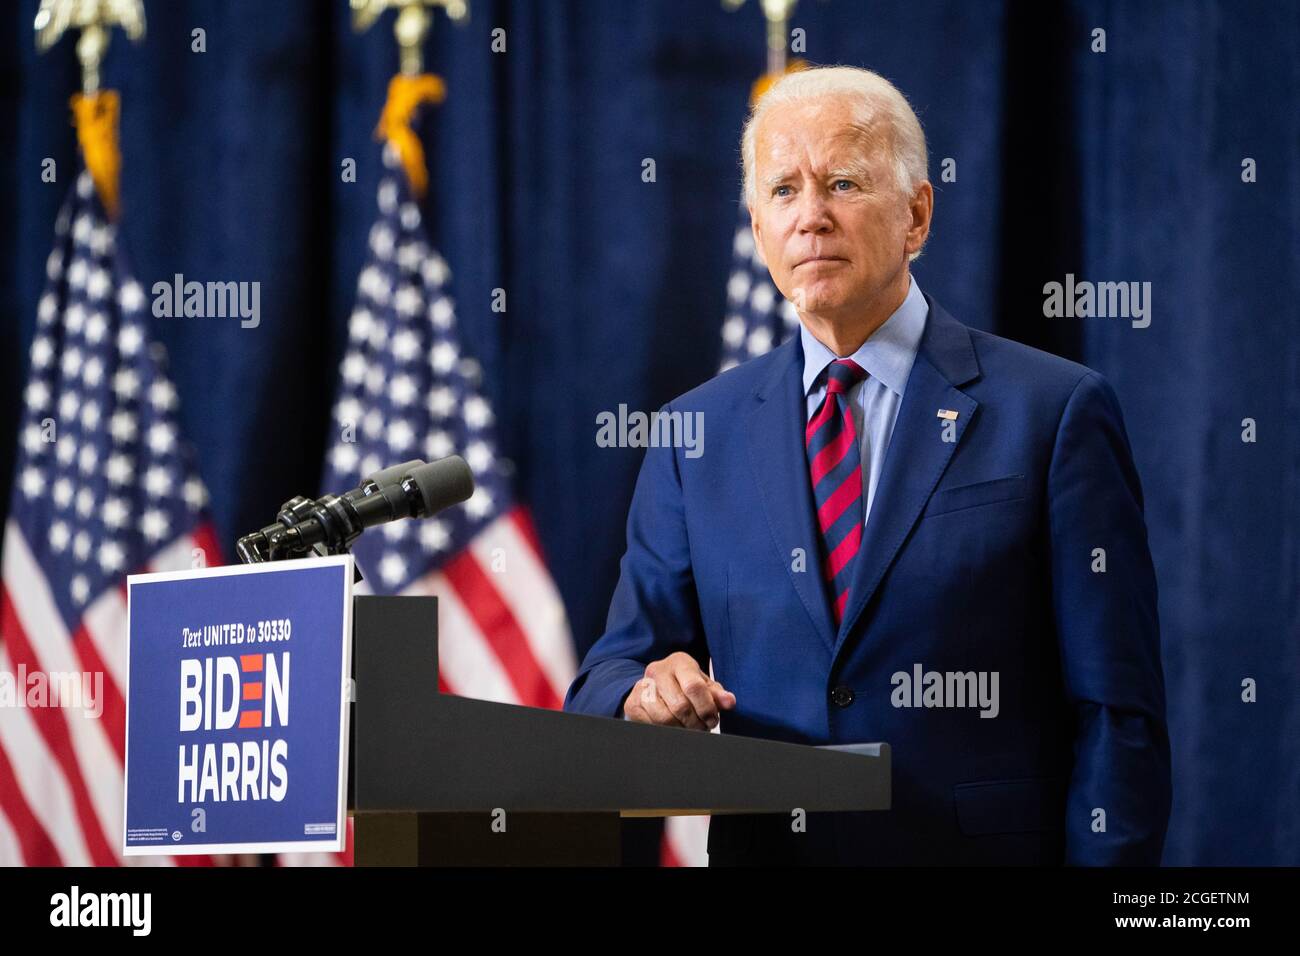 WILMINGTON, PA, EE.UU. - 04 de septiembre de 2020 - el candidato presidencial demócrata de EE.UU. Joe Biden en una conferencia de prensa sobre "el estado de la economía de EE.UU. Annd Job Foto de stock